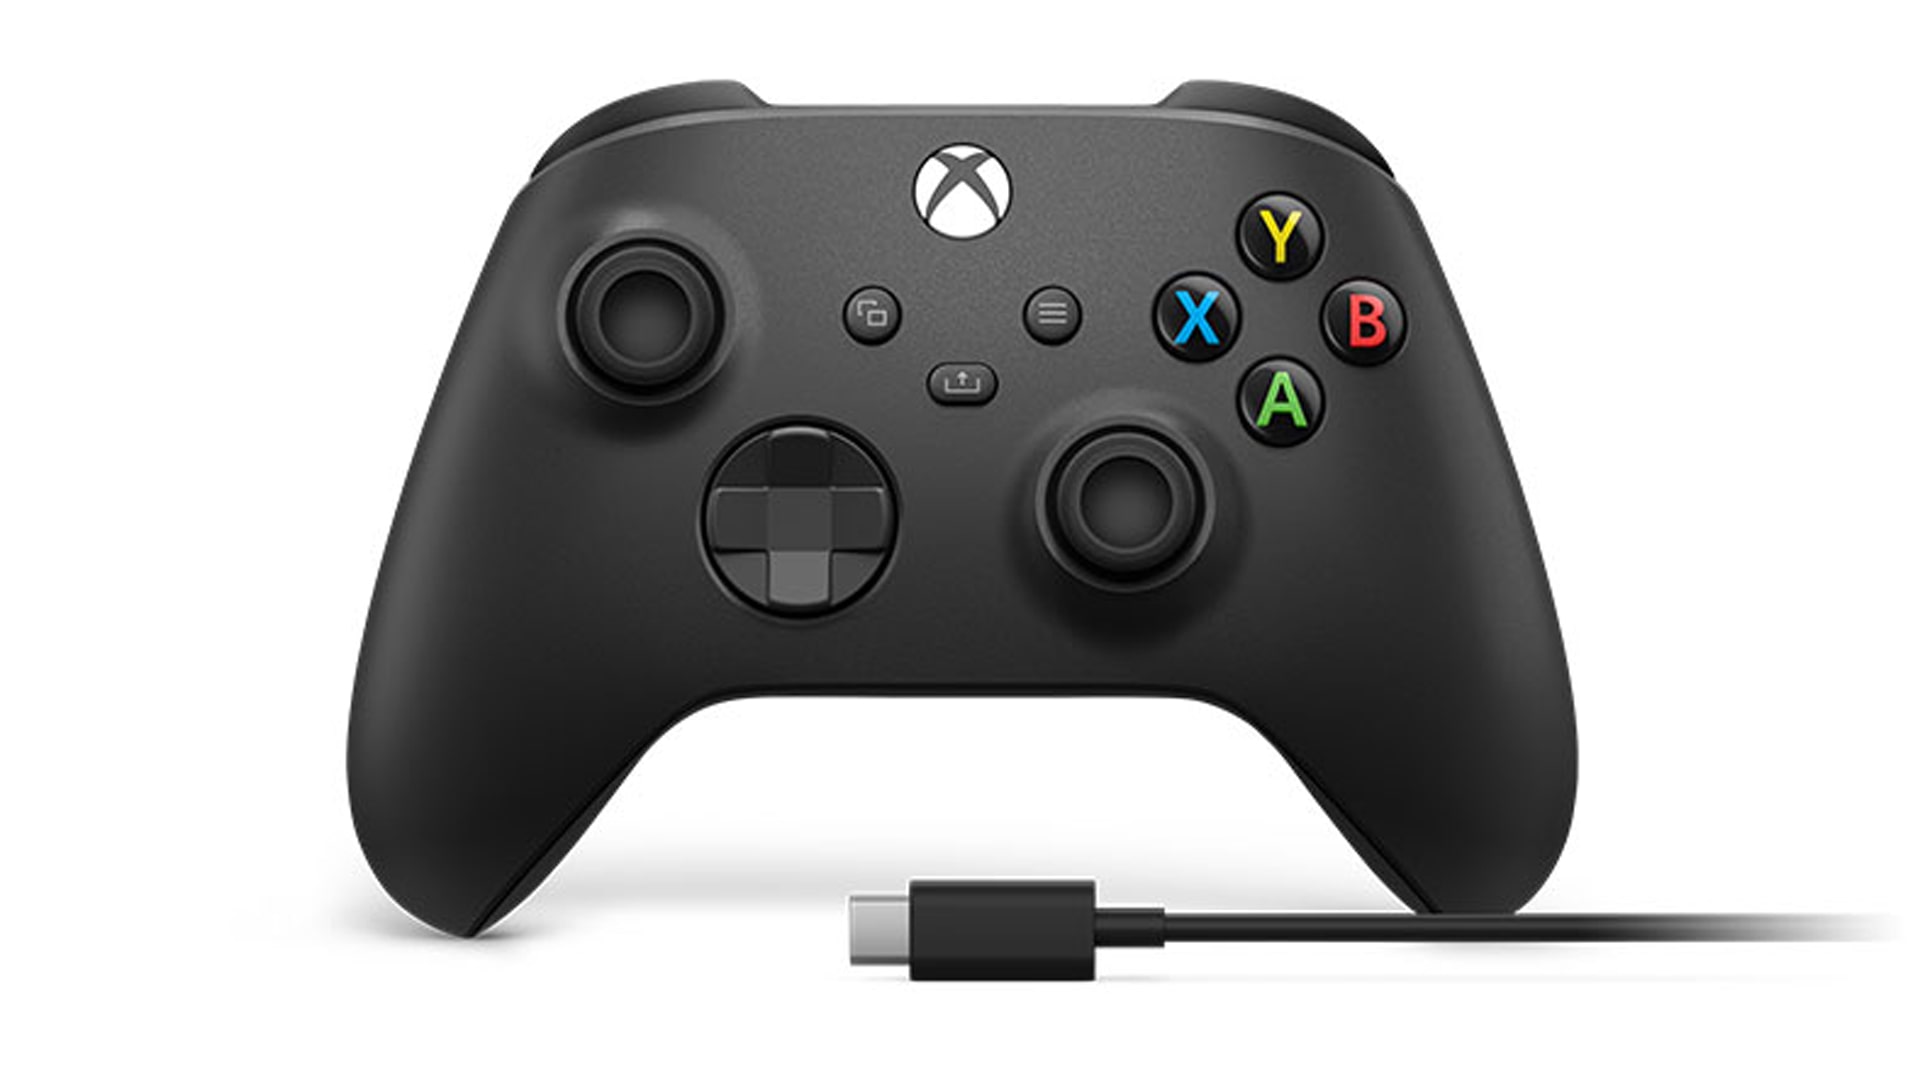 A photo of an Xbox 360 controller